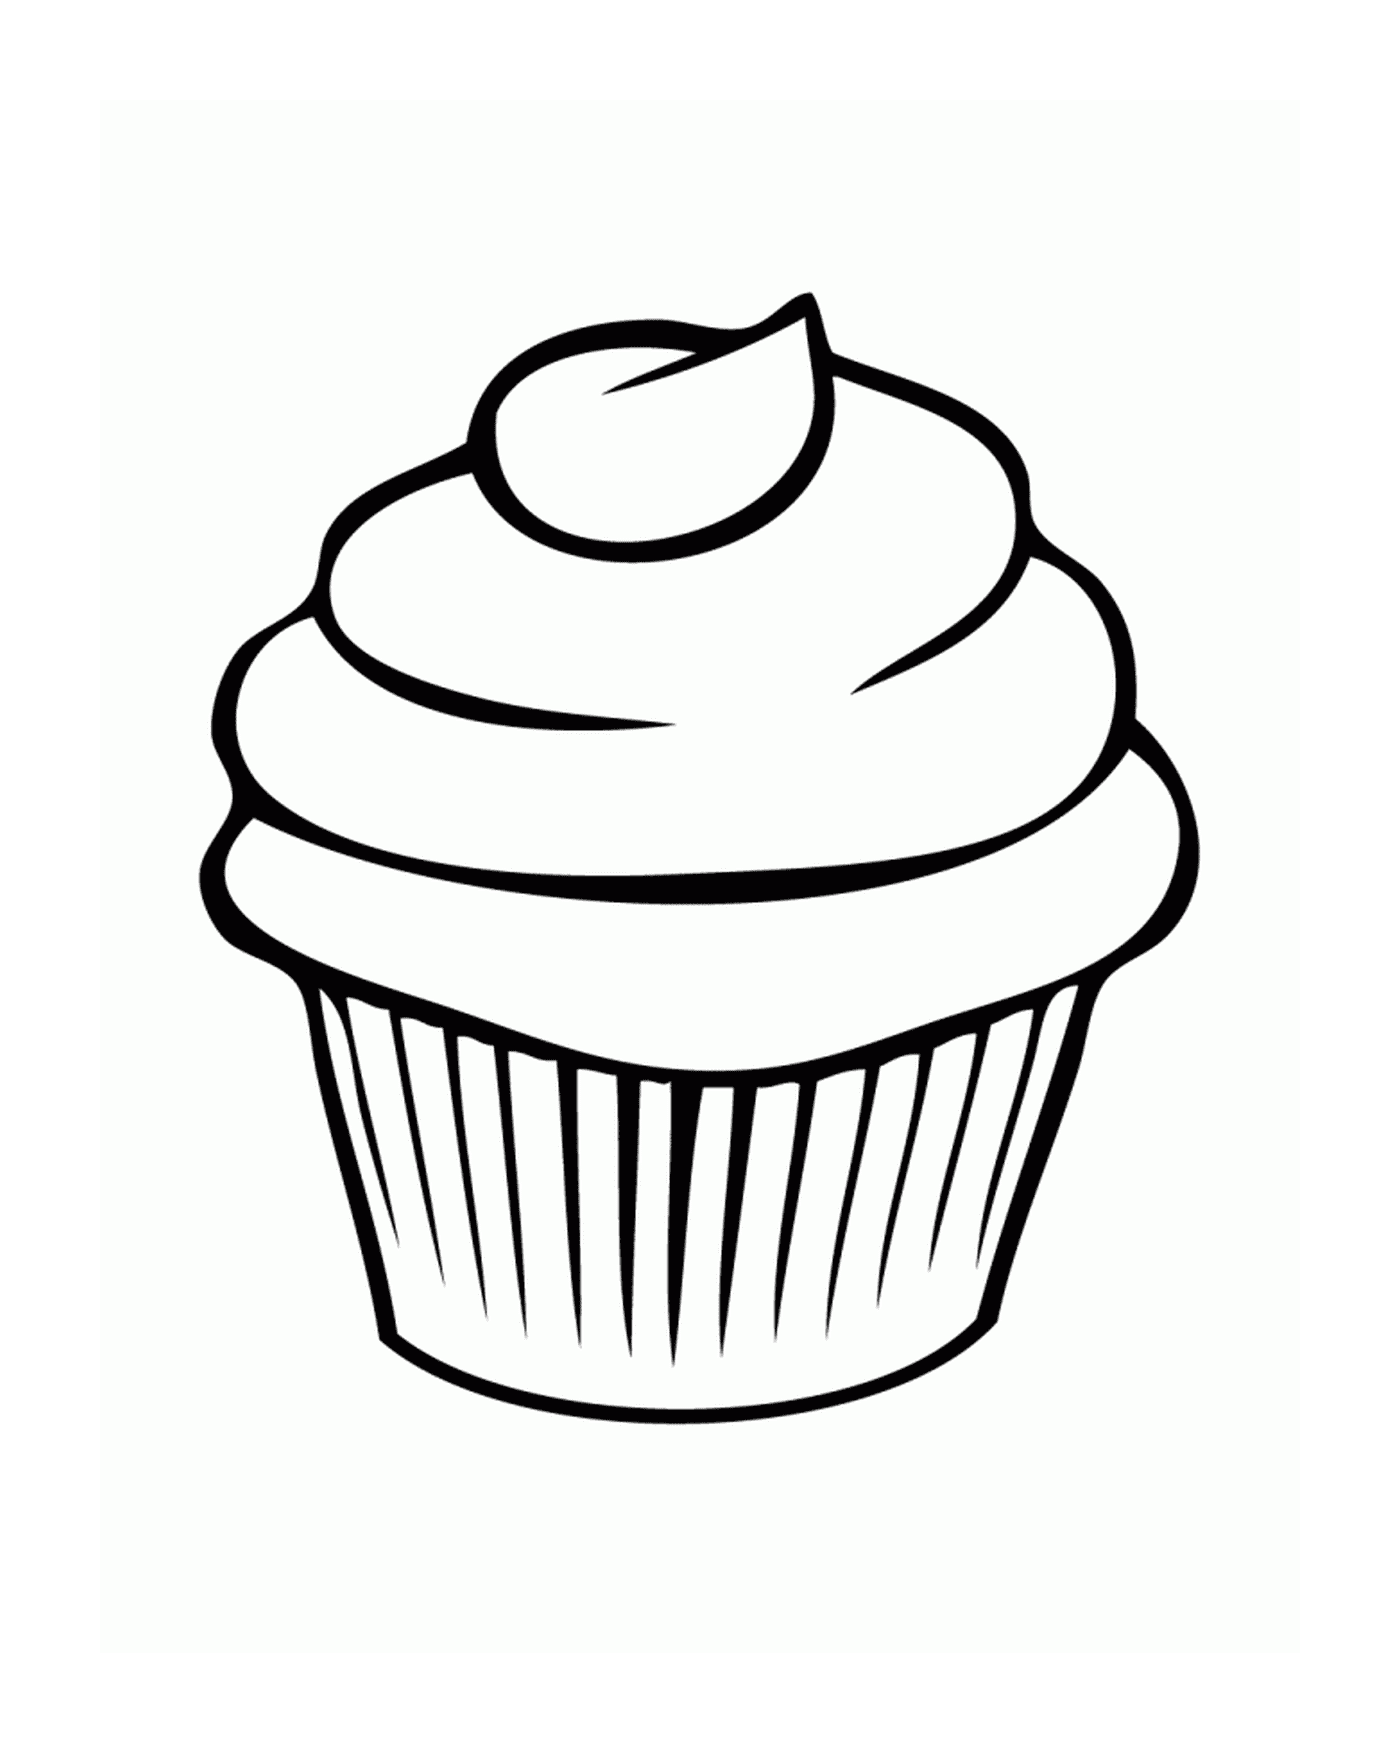  Un cupcake sencillo y fácil 